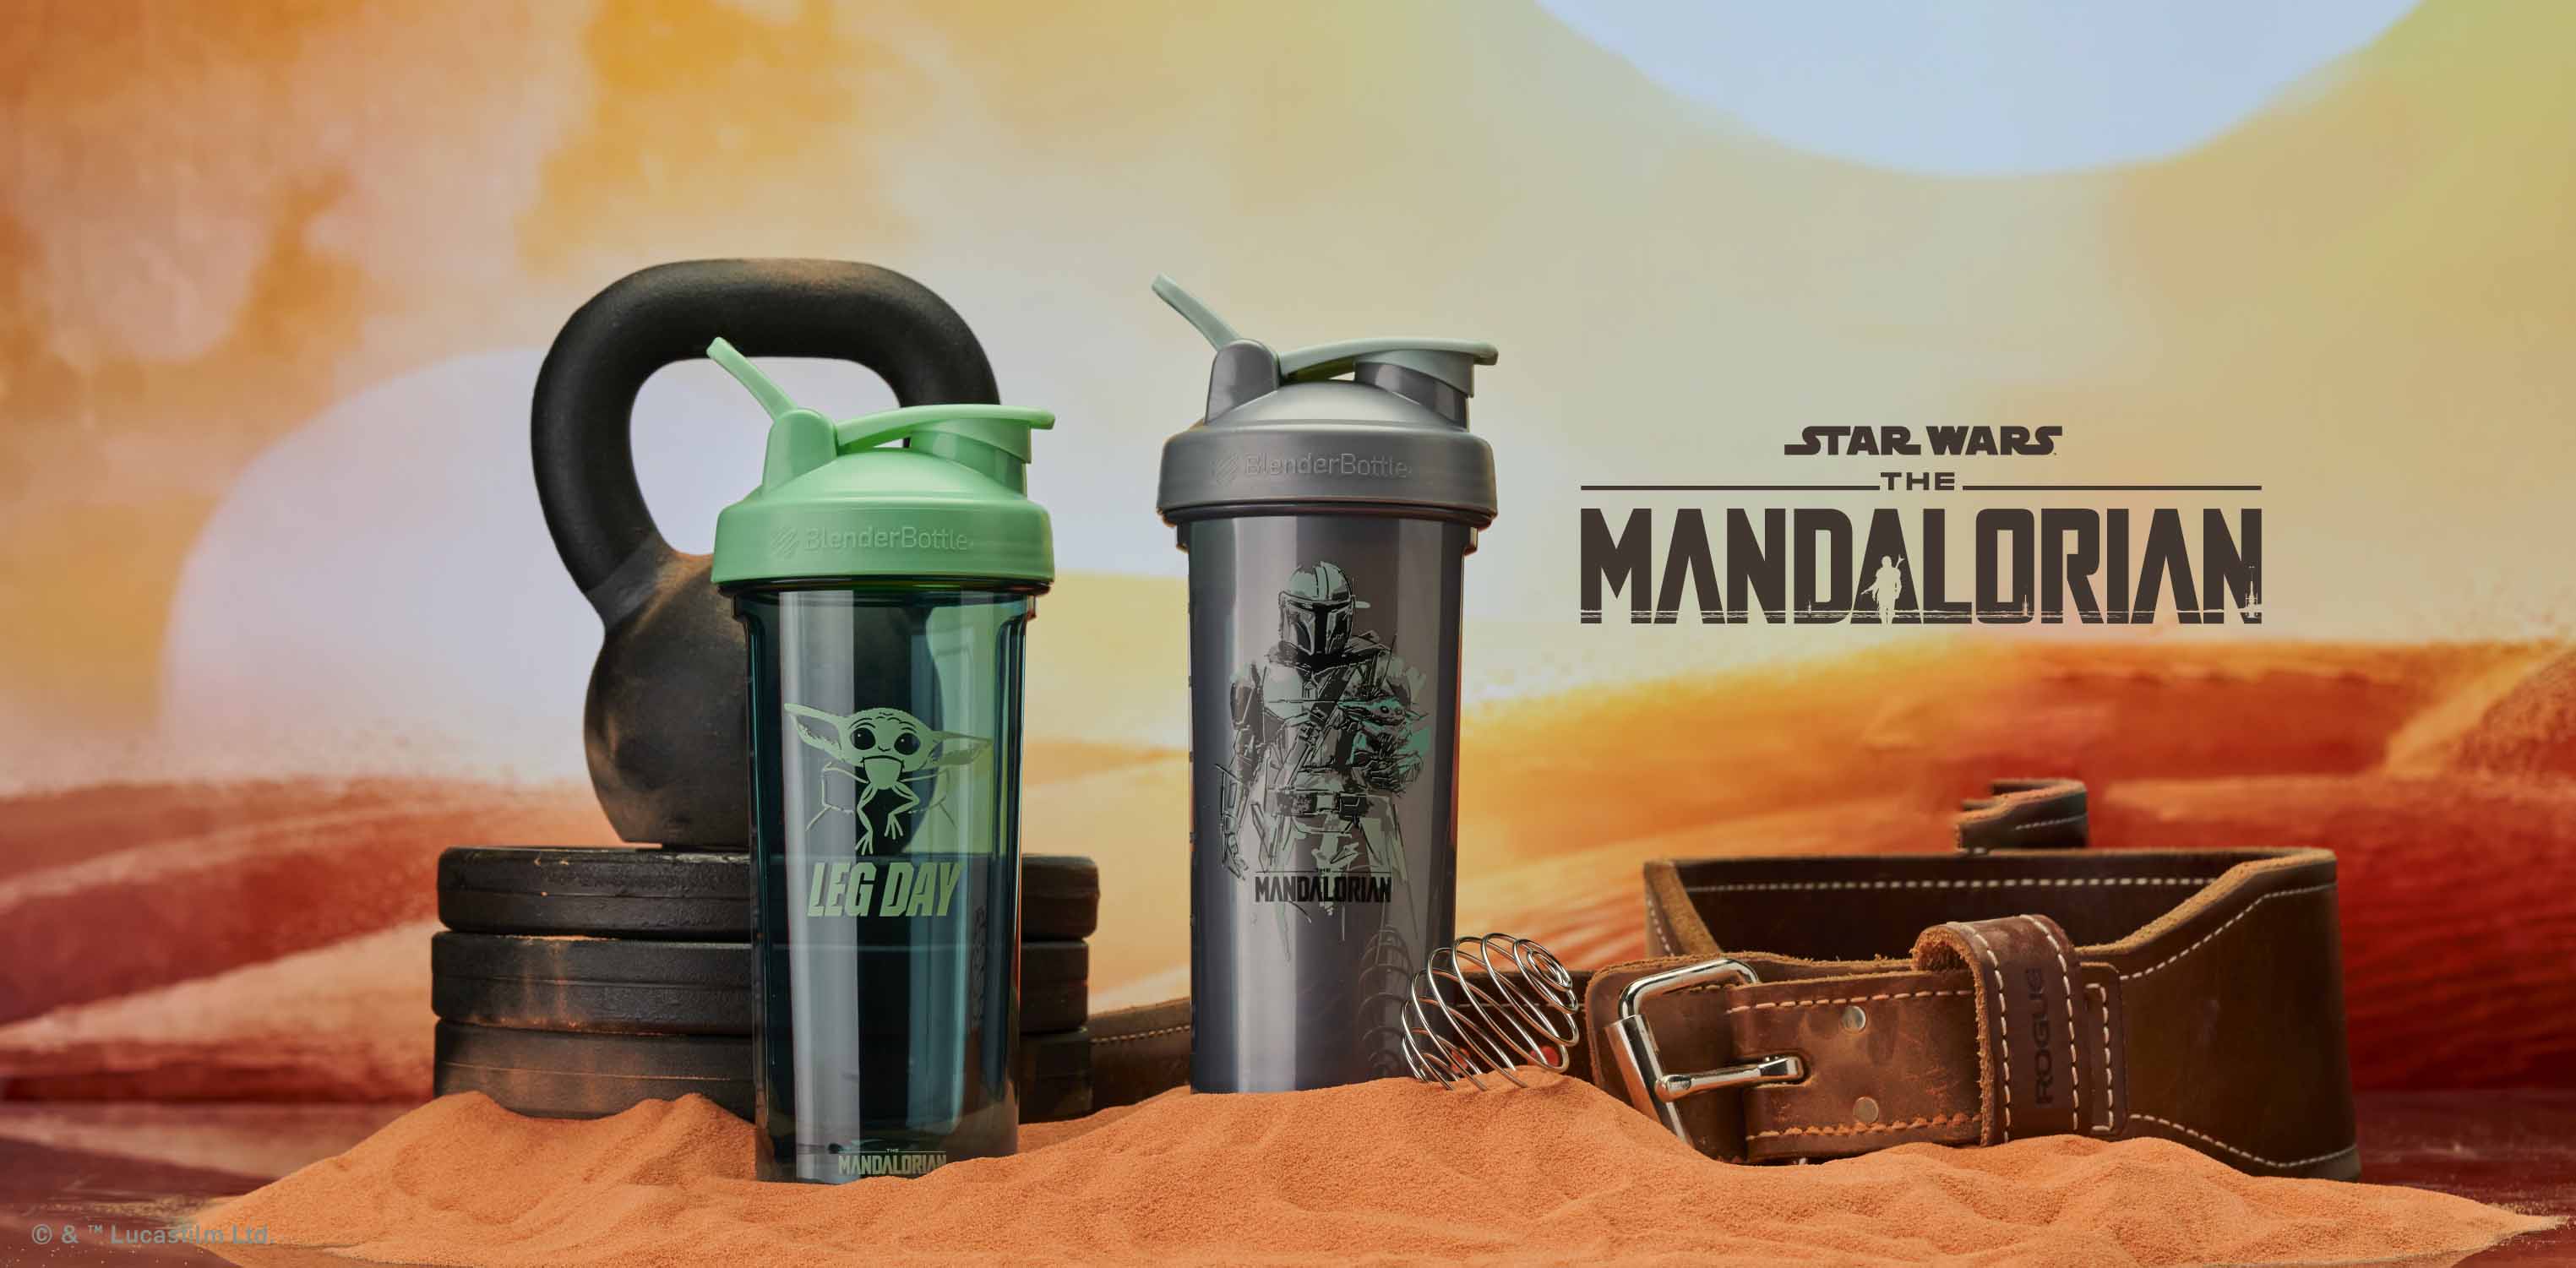 The Mandalorian Star Wars Blender Bottle Brand Shaker Bottles and Shaker Cups